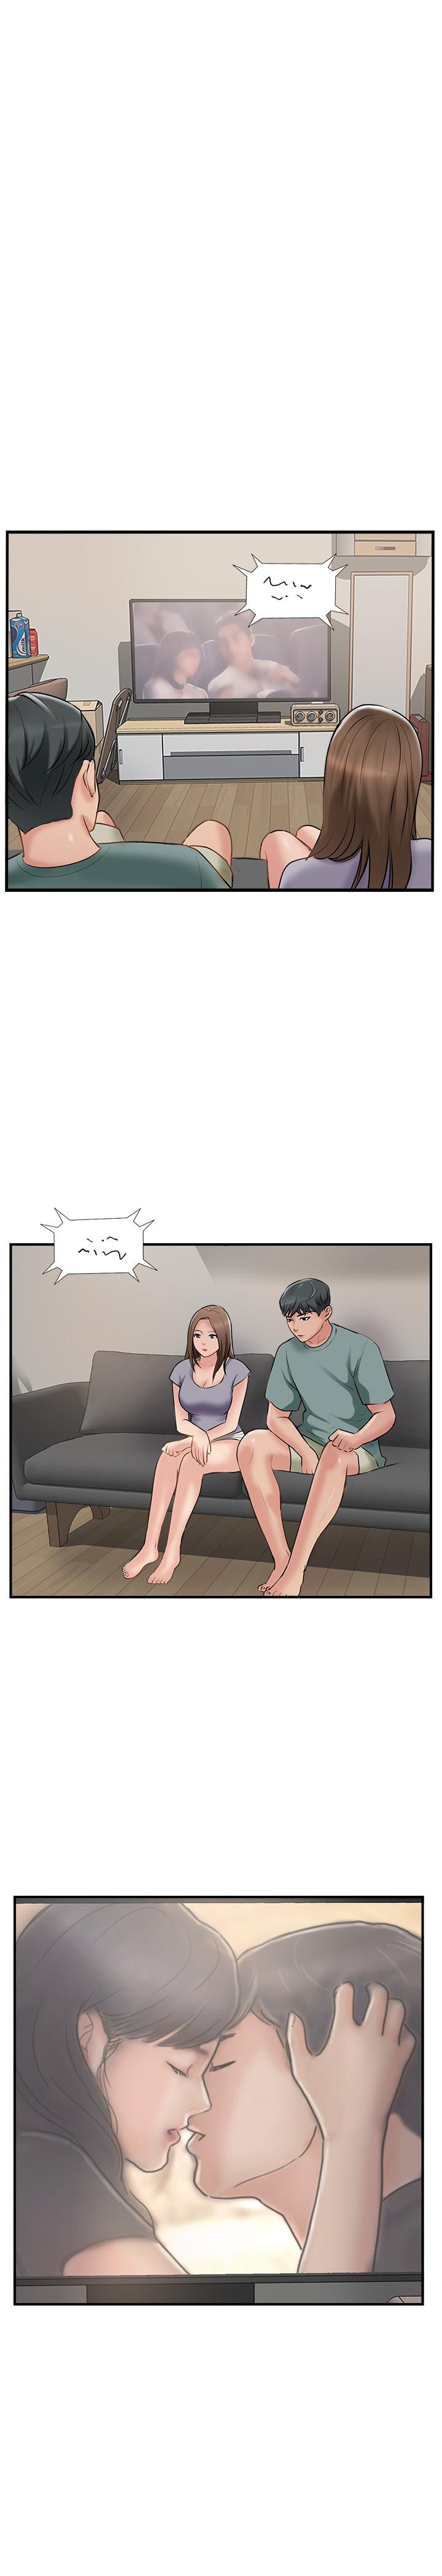 韩国污漫画 完美新伴侶 第38话-想尝试肛交的晓琳 1